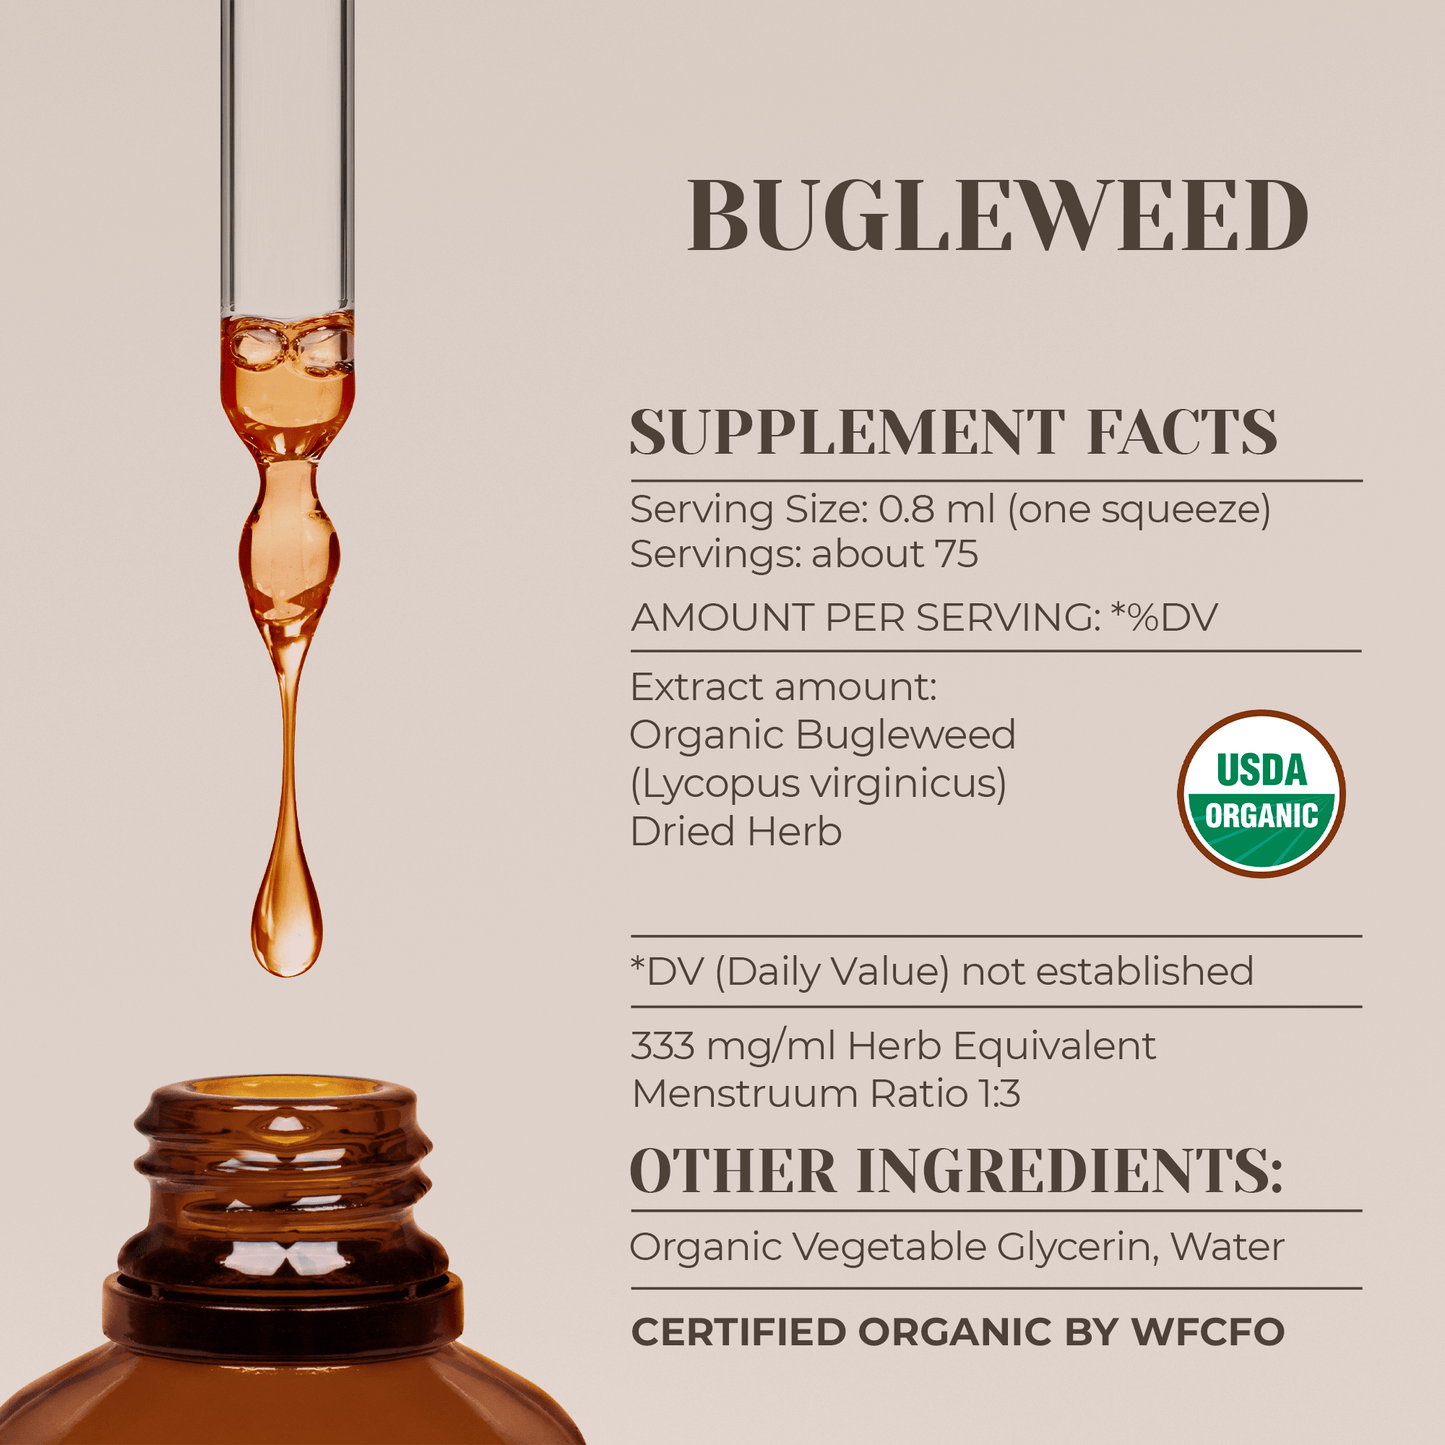 Bugleweed Tincture